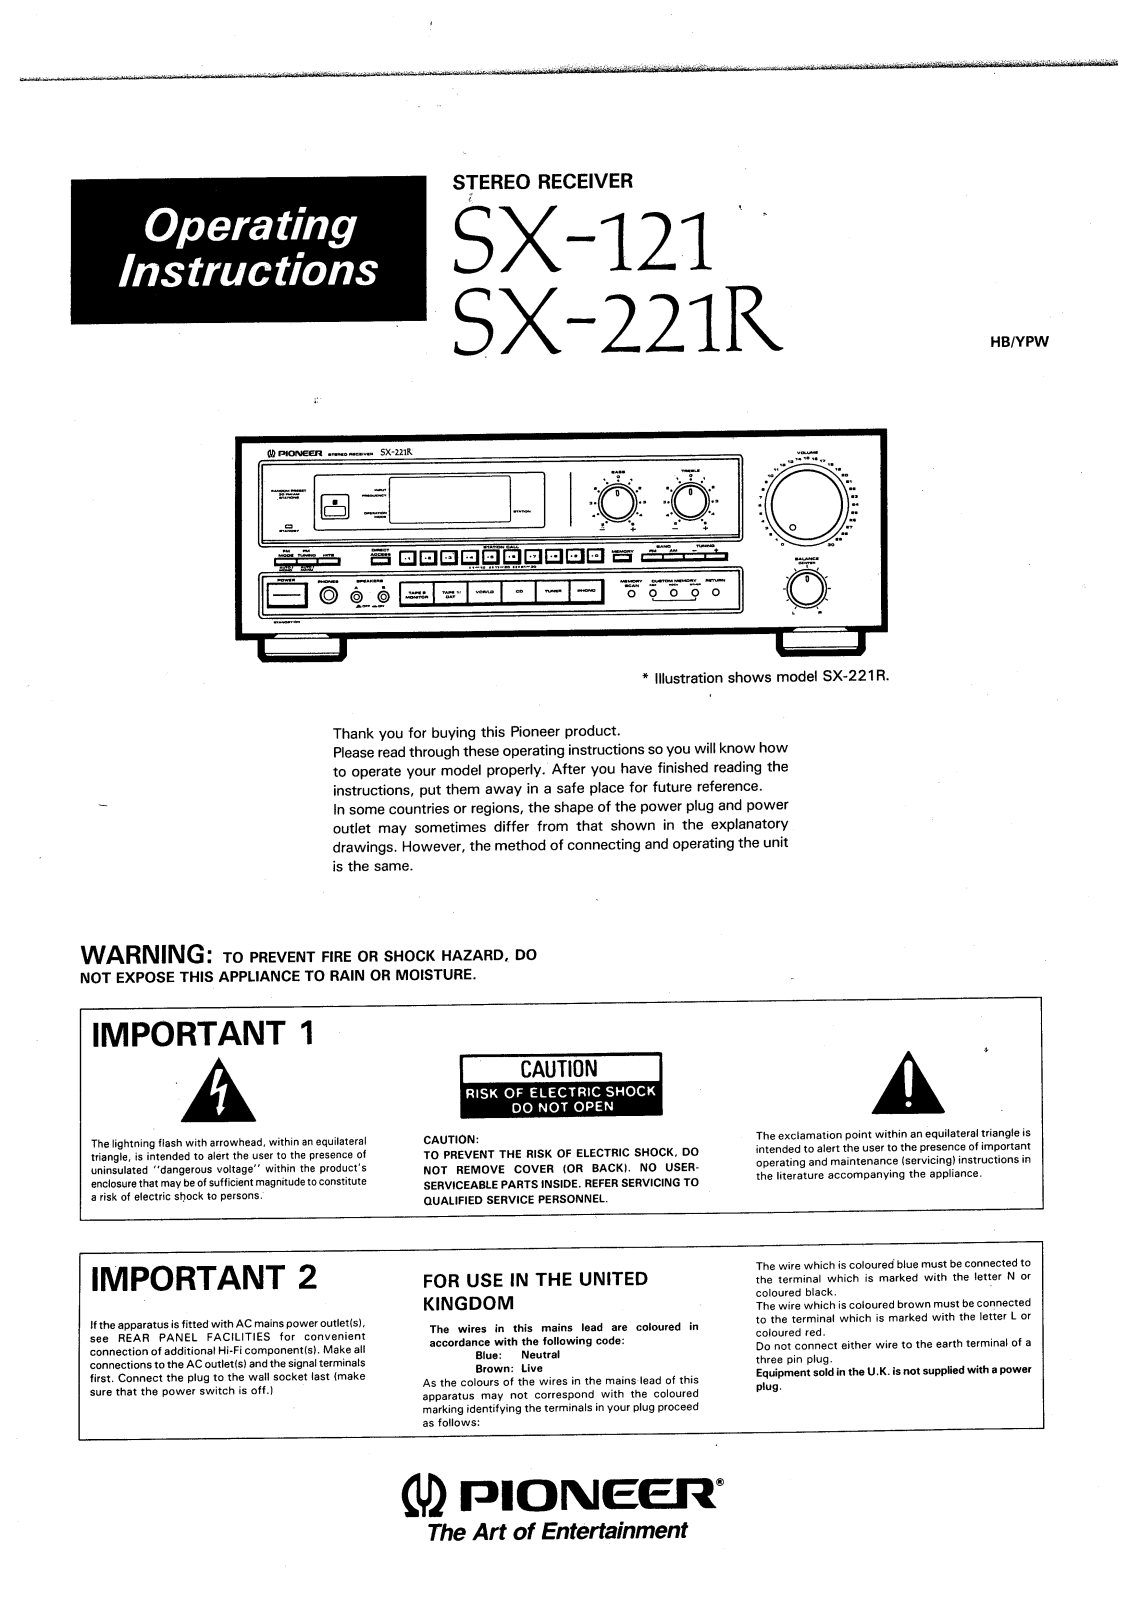 Pioneer SX-221R Owners Manual